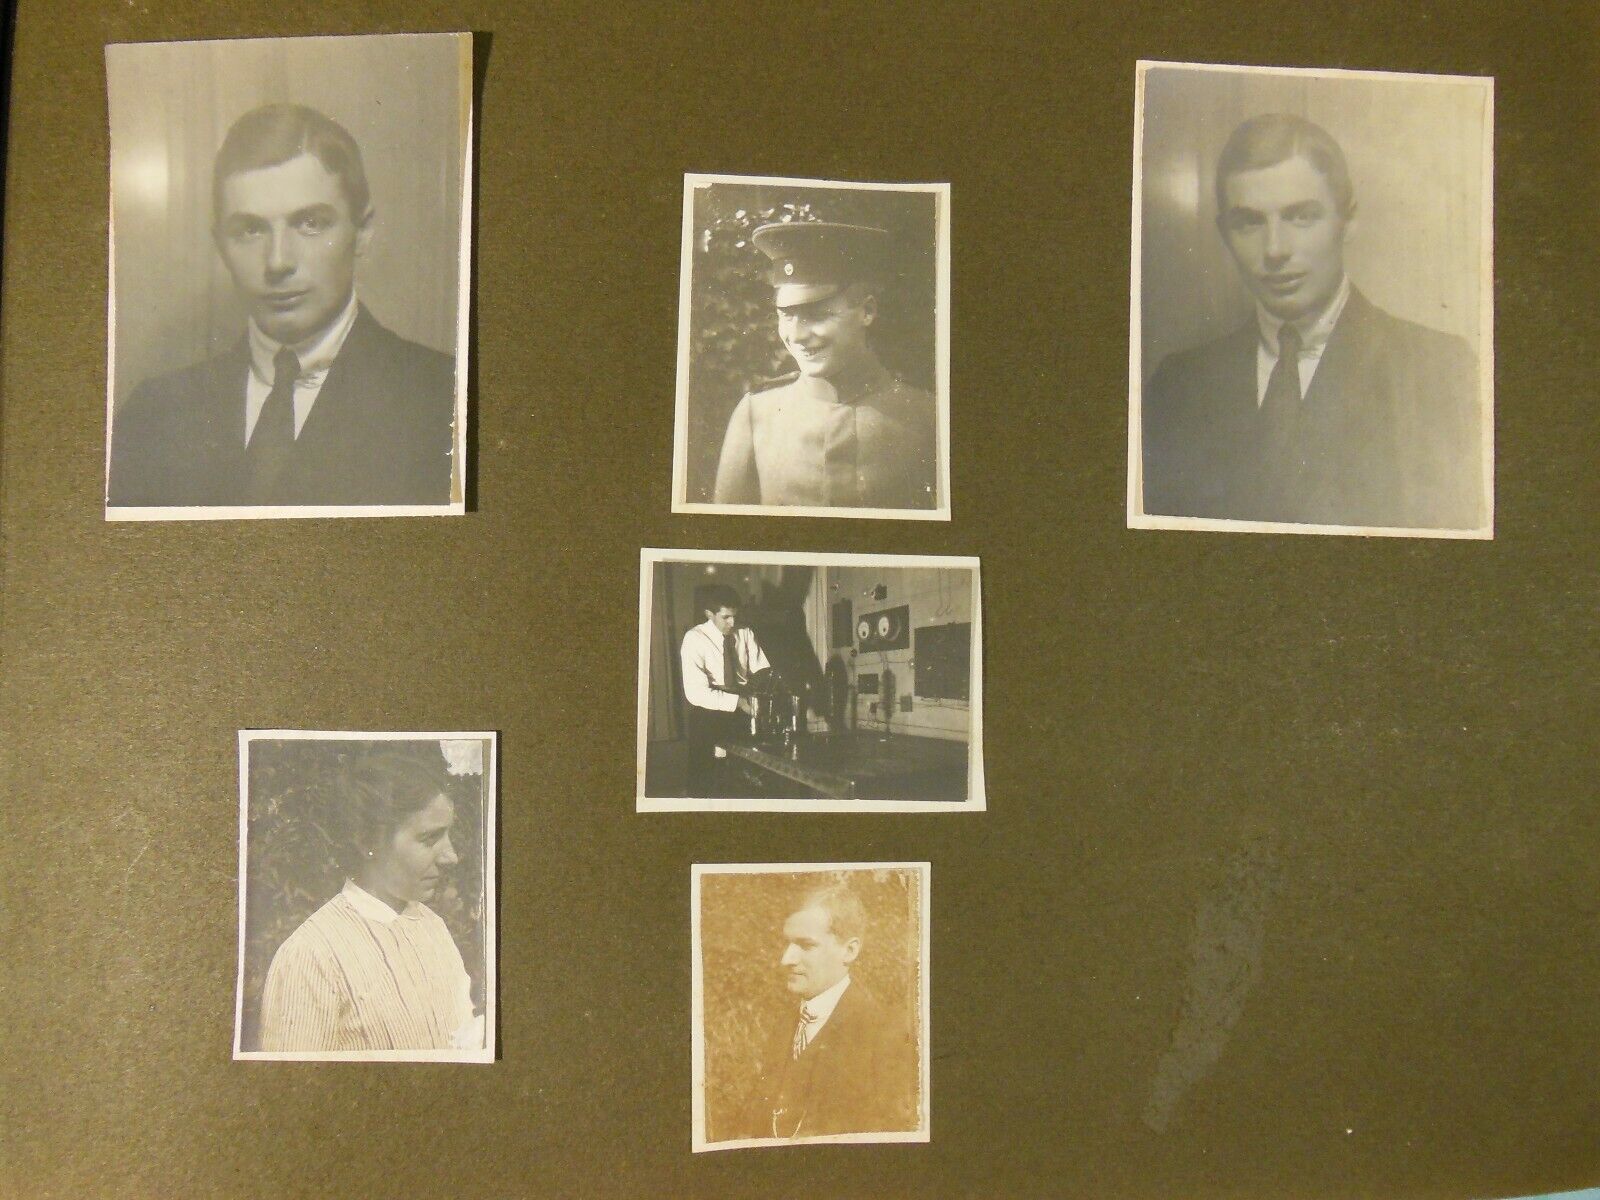 Fritz London, physicist, 1916-17 photo album, Breslau, Bonn, Quantum Mechanics